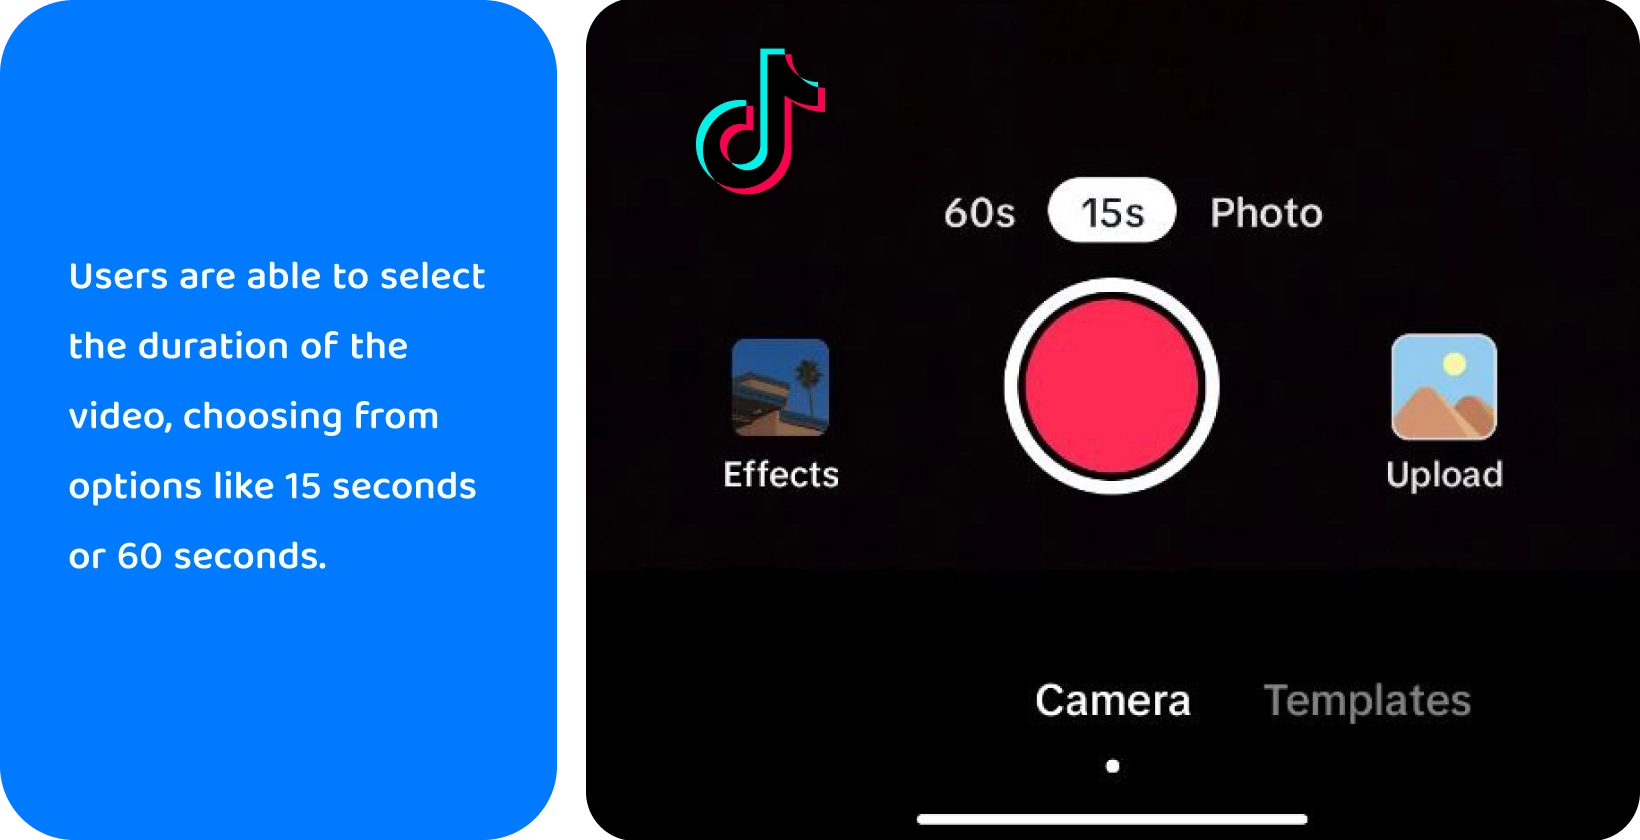 TikTok optagelsesgrænseflade med muligheder for at tilføje lyd, vende kamera, anvende filtre, bruge timer og mere til kreativ videofremstilling.
